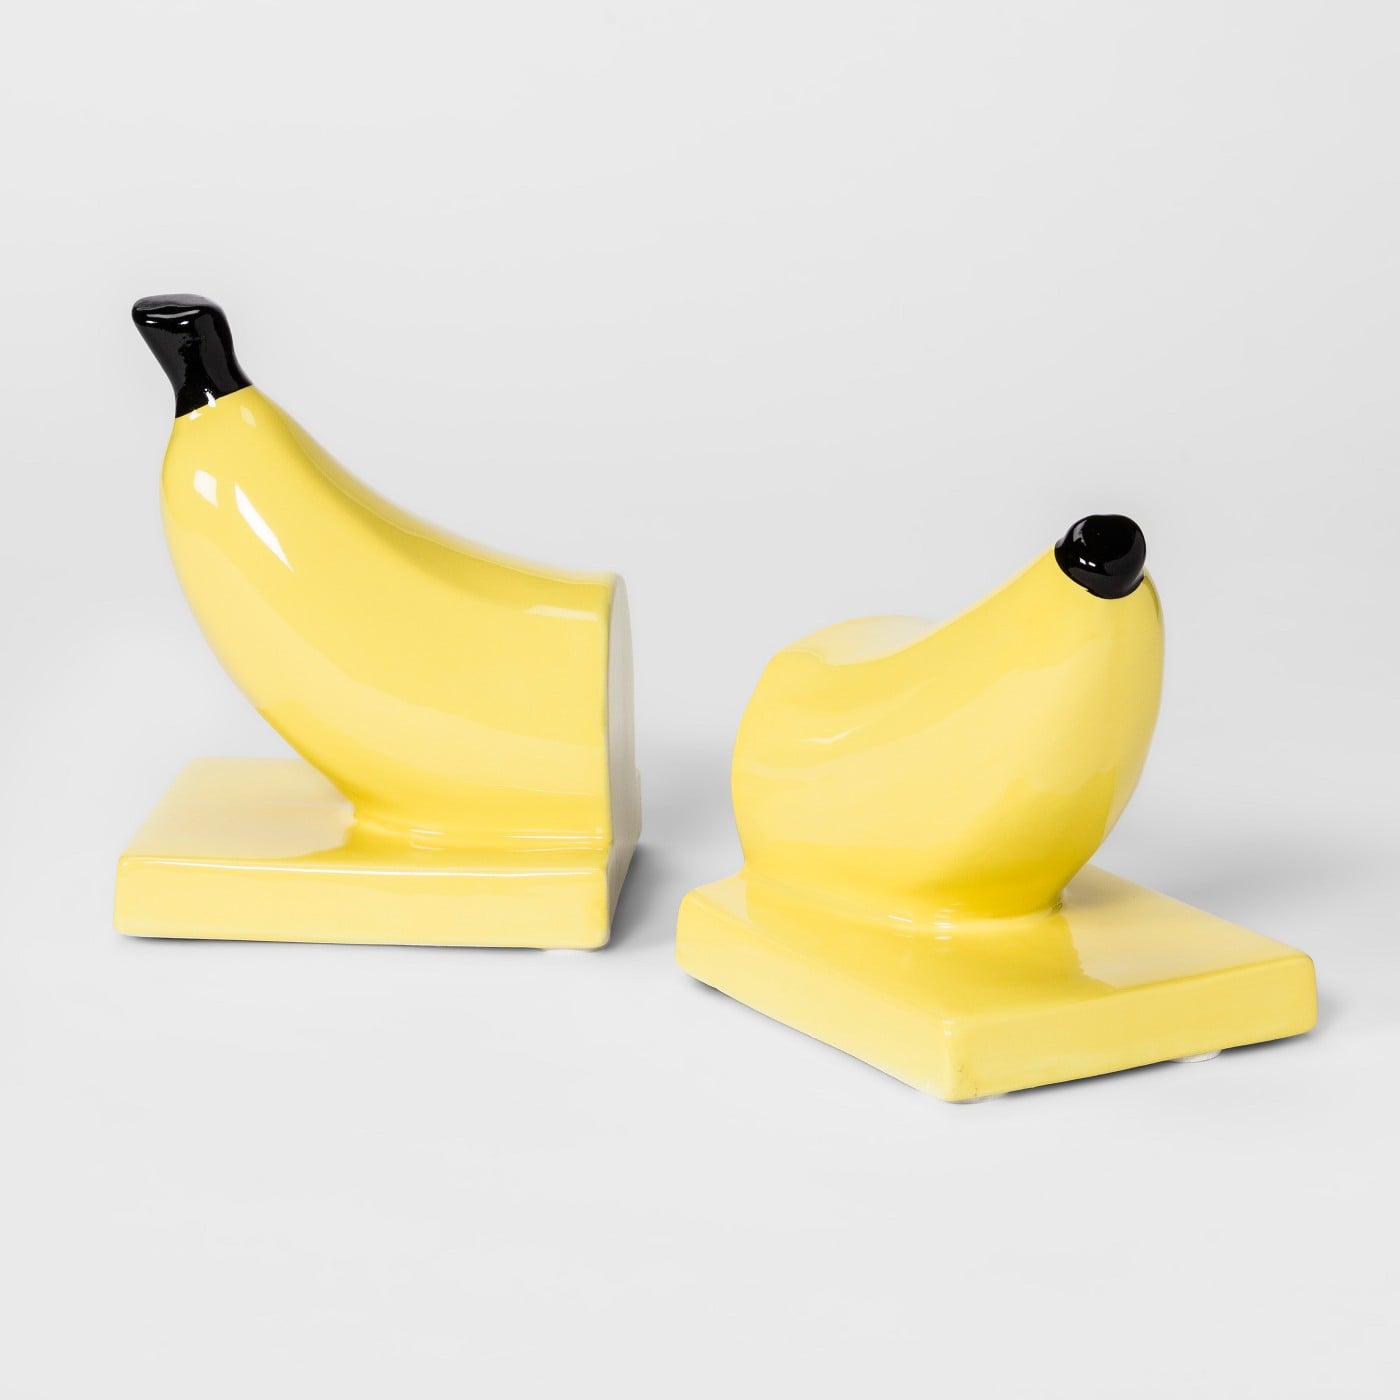 banana toy target